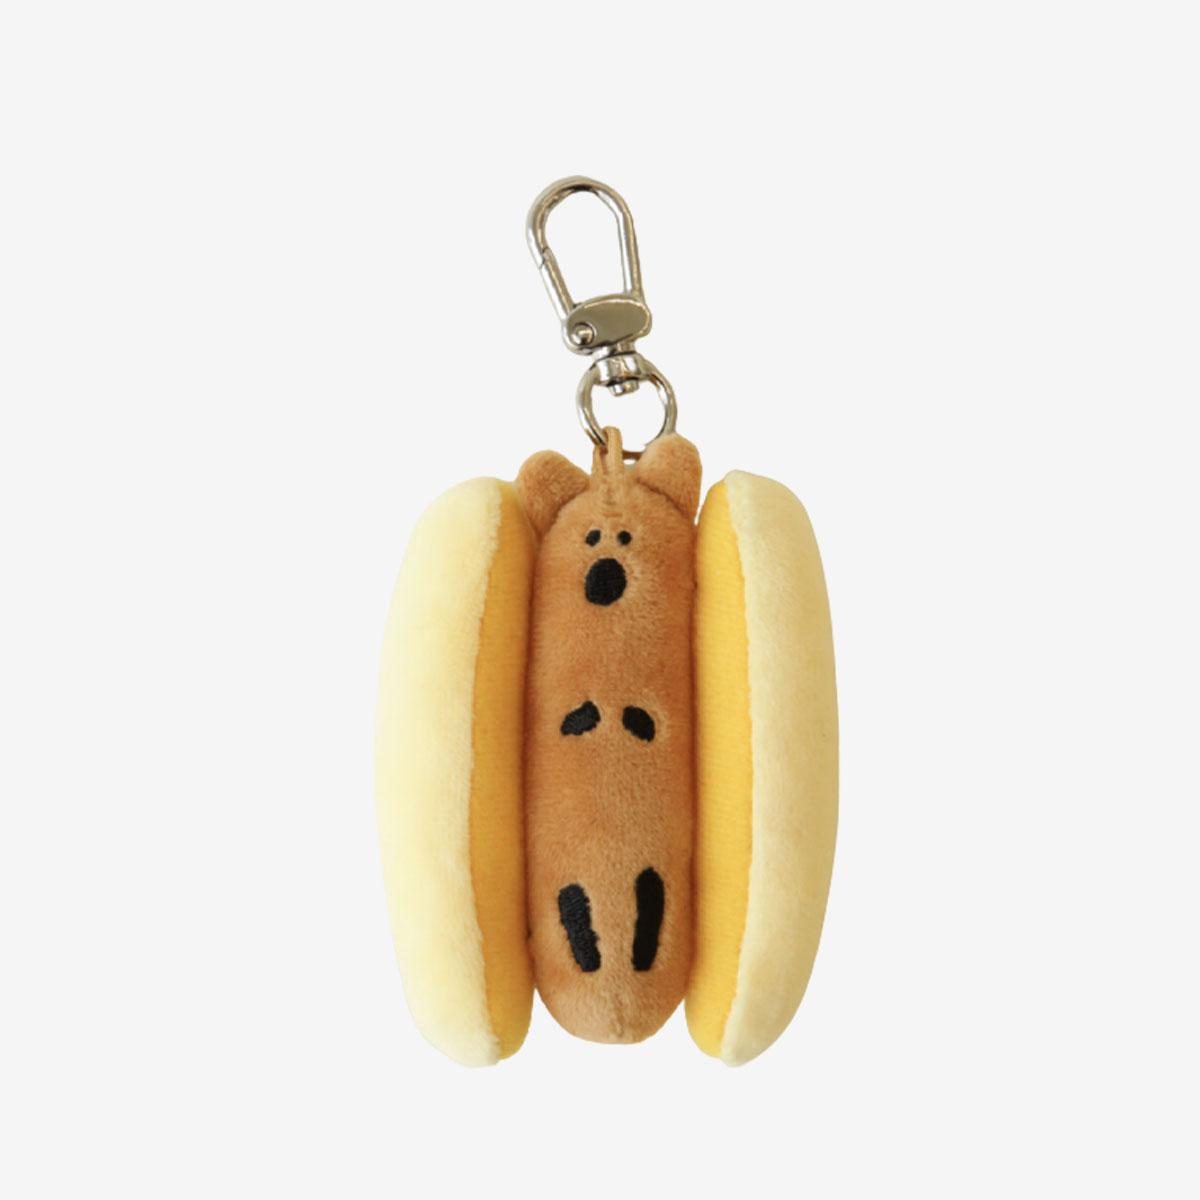 Quokdog 熱狗造型鑰匙圈